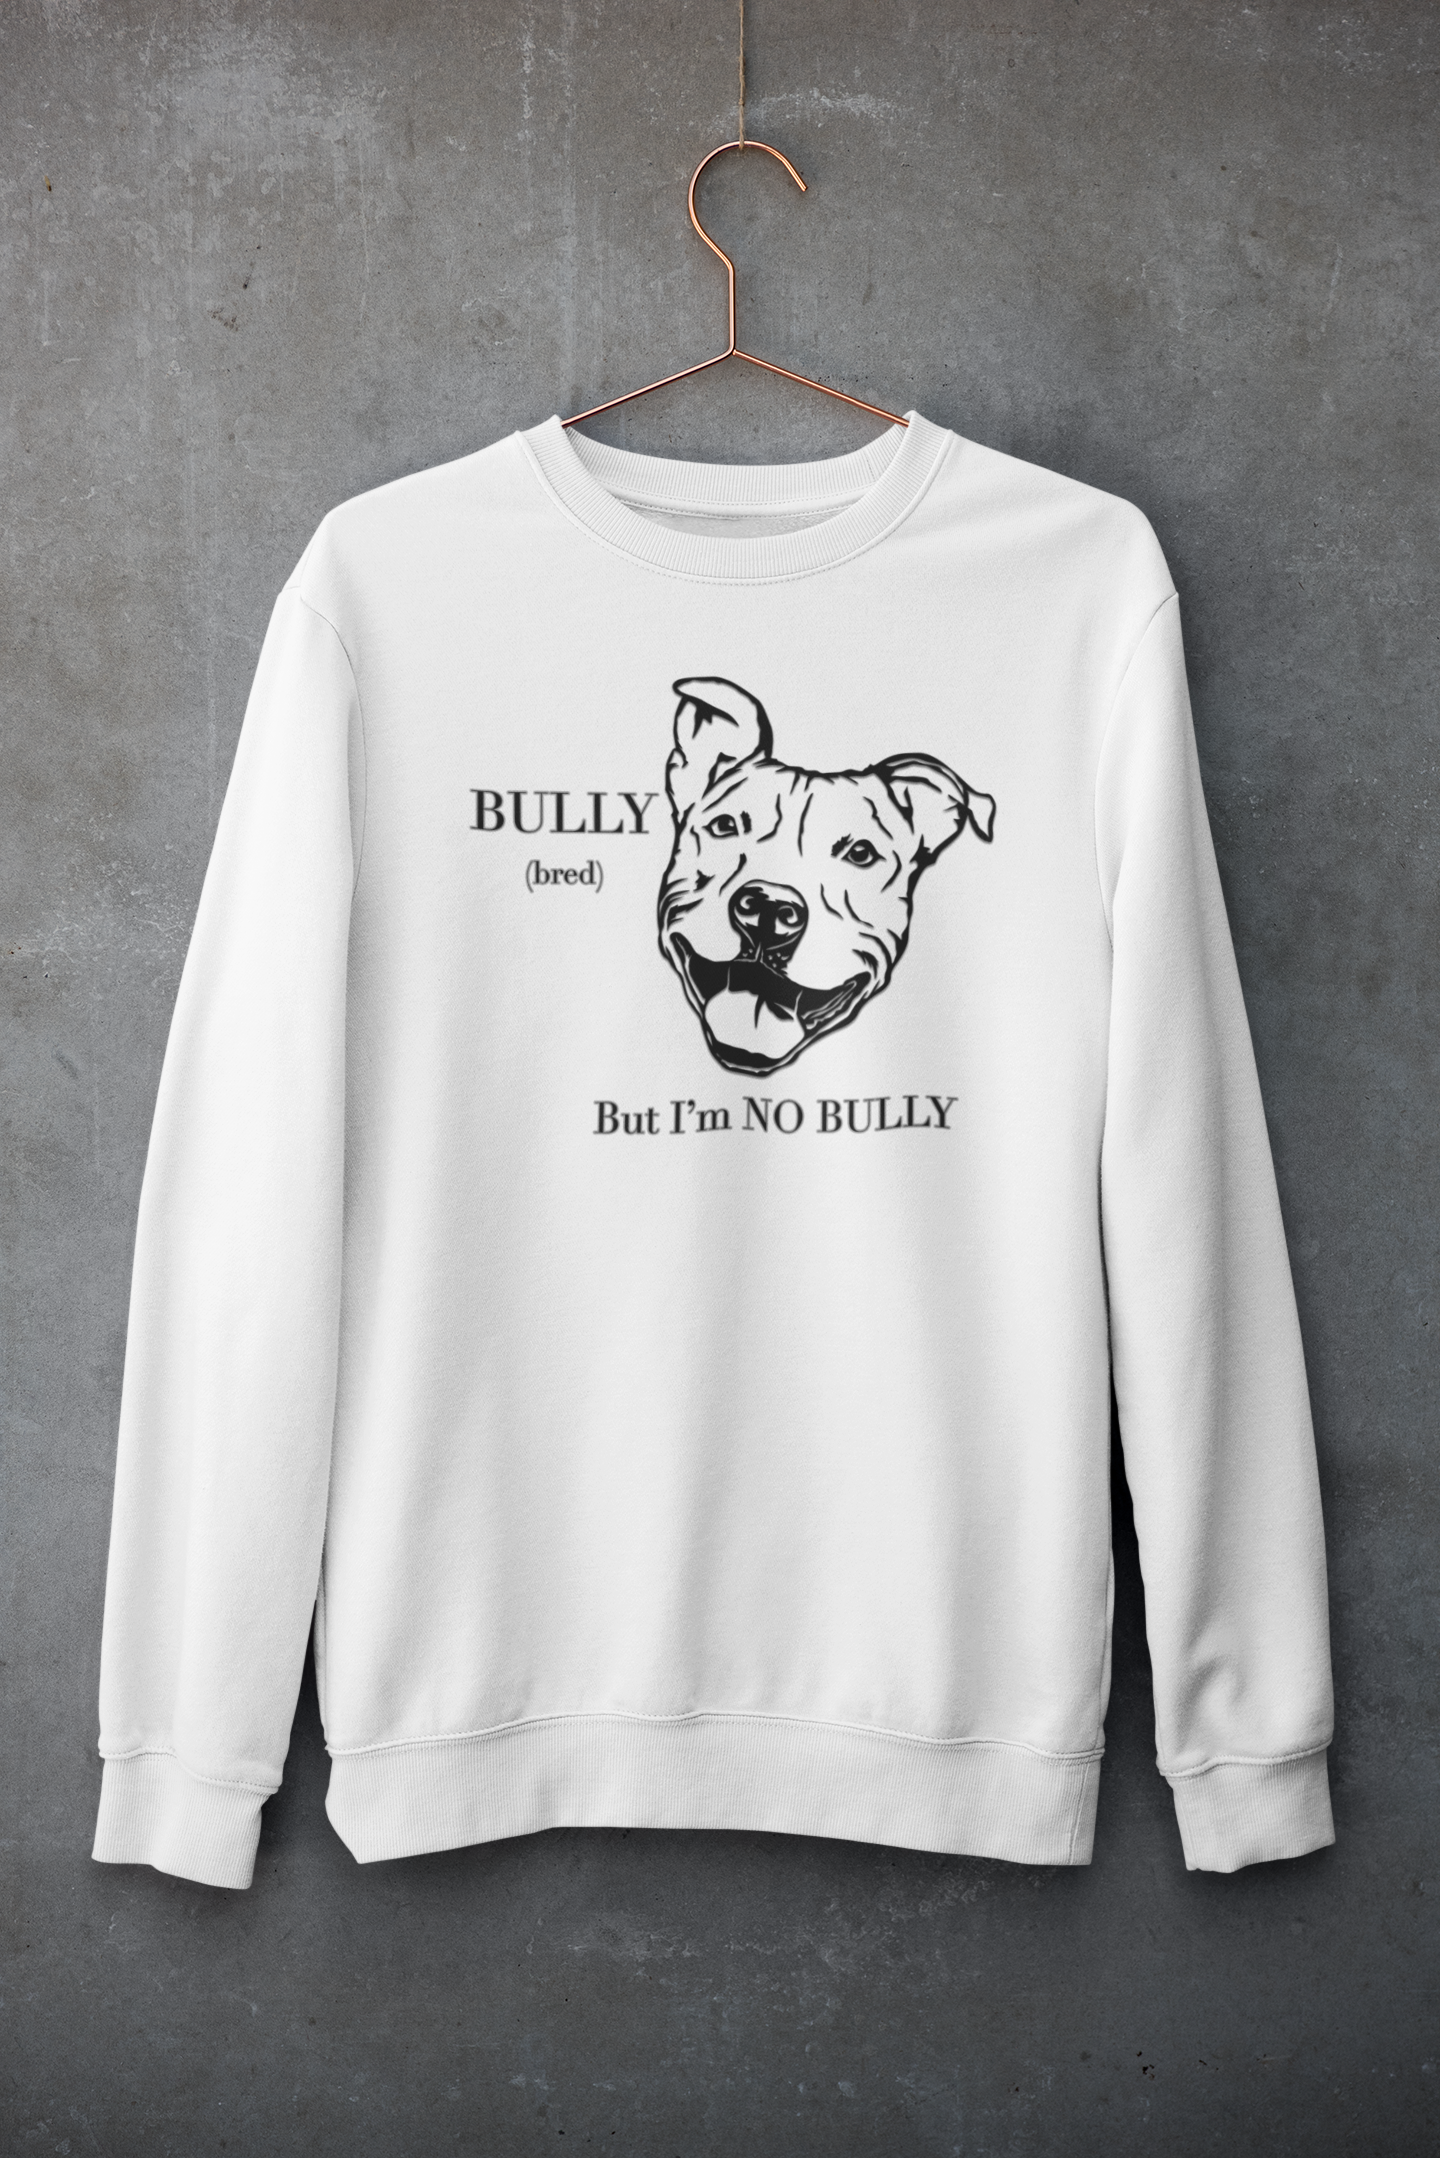 Bully (bred).....I'm No Bully – dogoncool